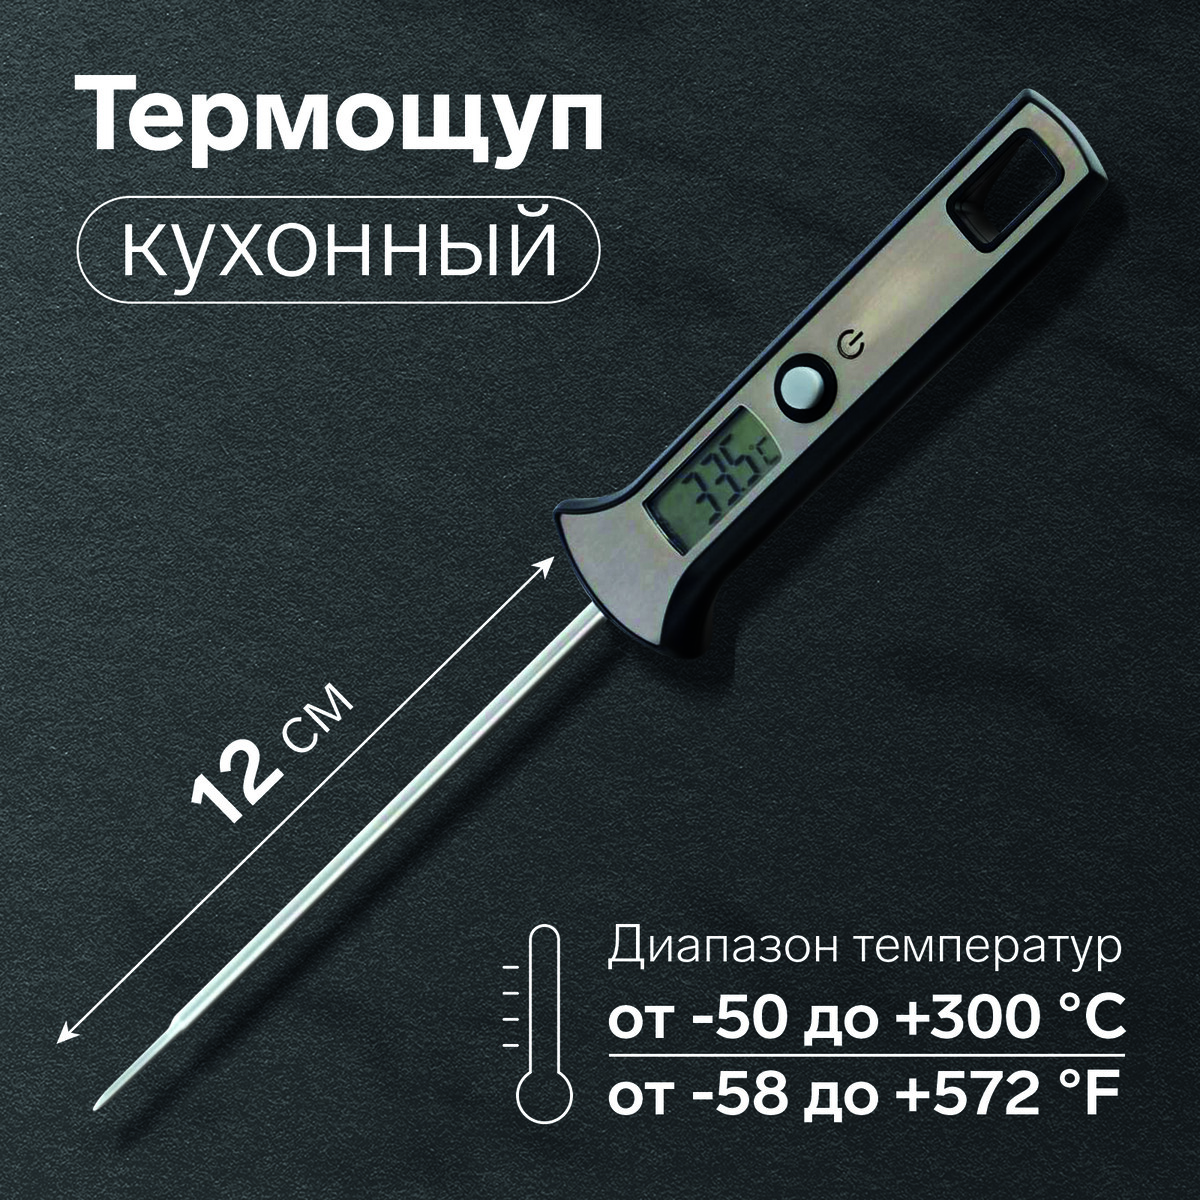 Термощуп кухонный ltr-19, максимальная температура 300 °c, от lr44, серебристый термощуп кухонный jr 1 электронный